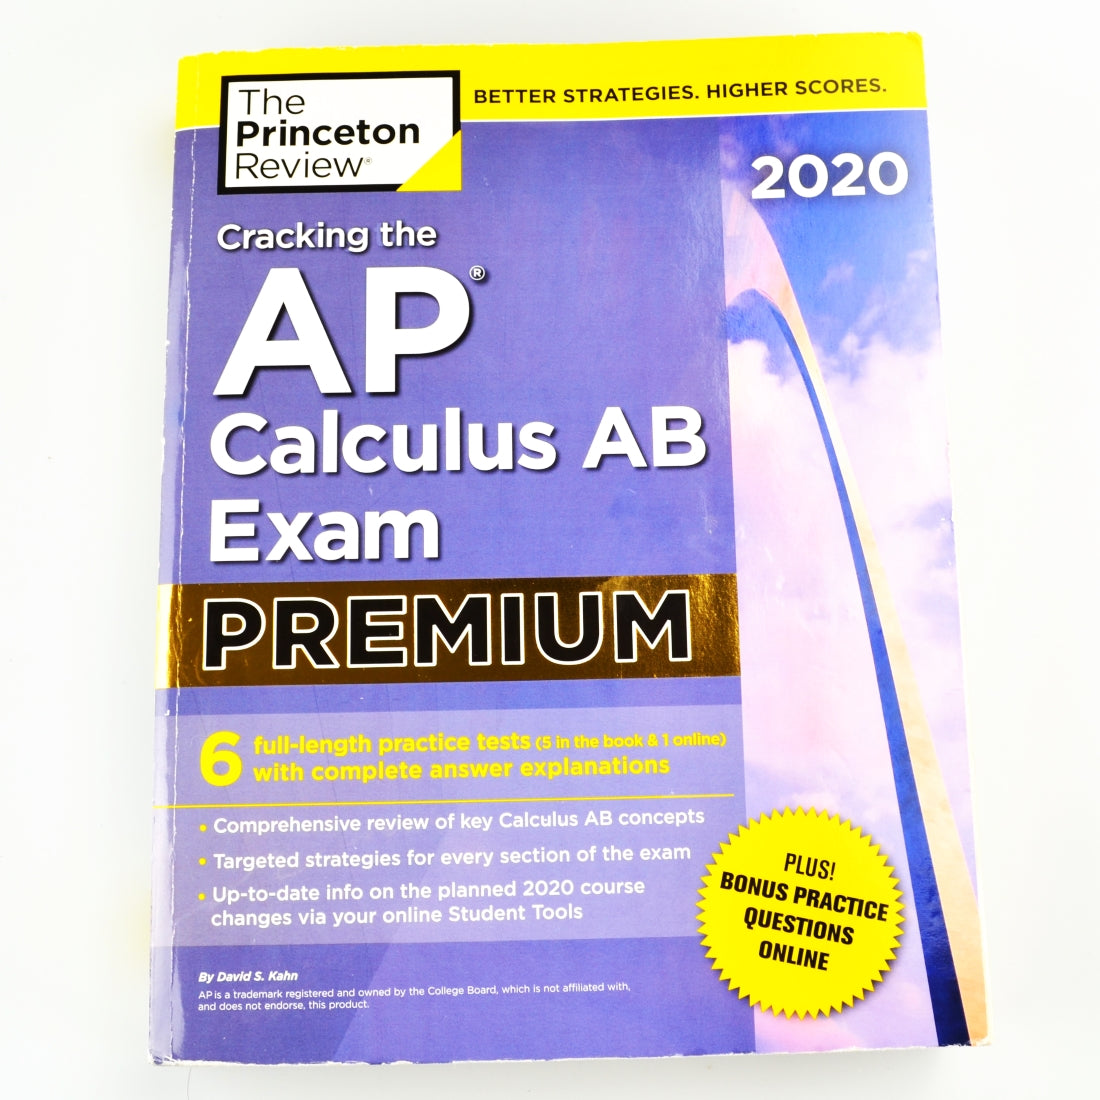 Cracking The AP Calculus AB Exam Premium by David Kahn - 2020